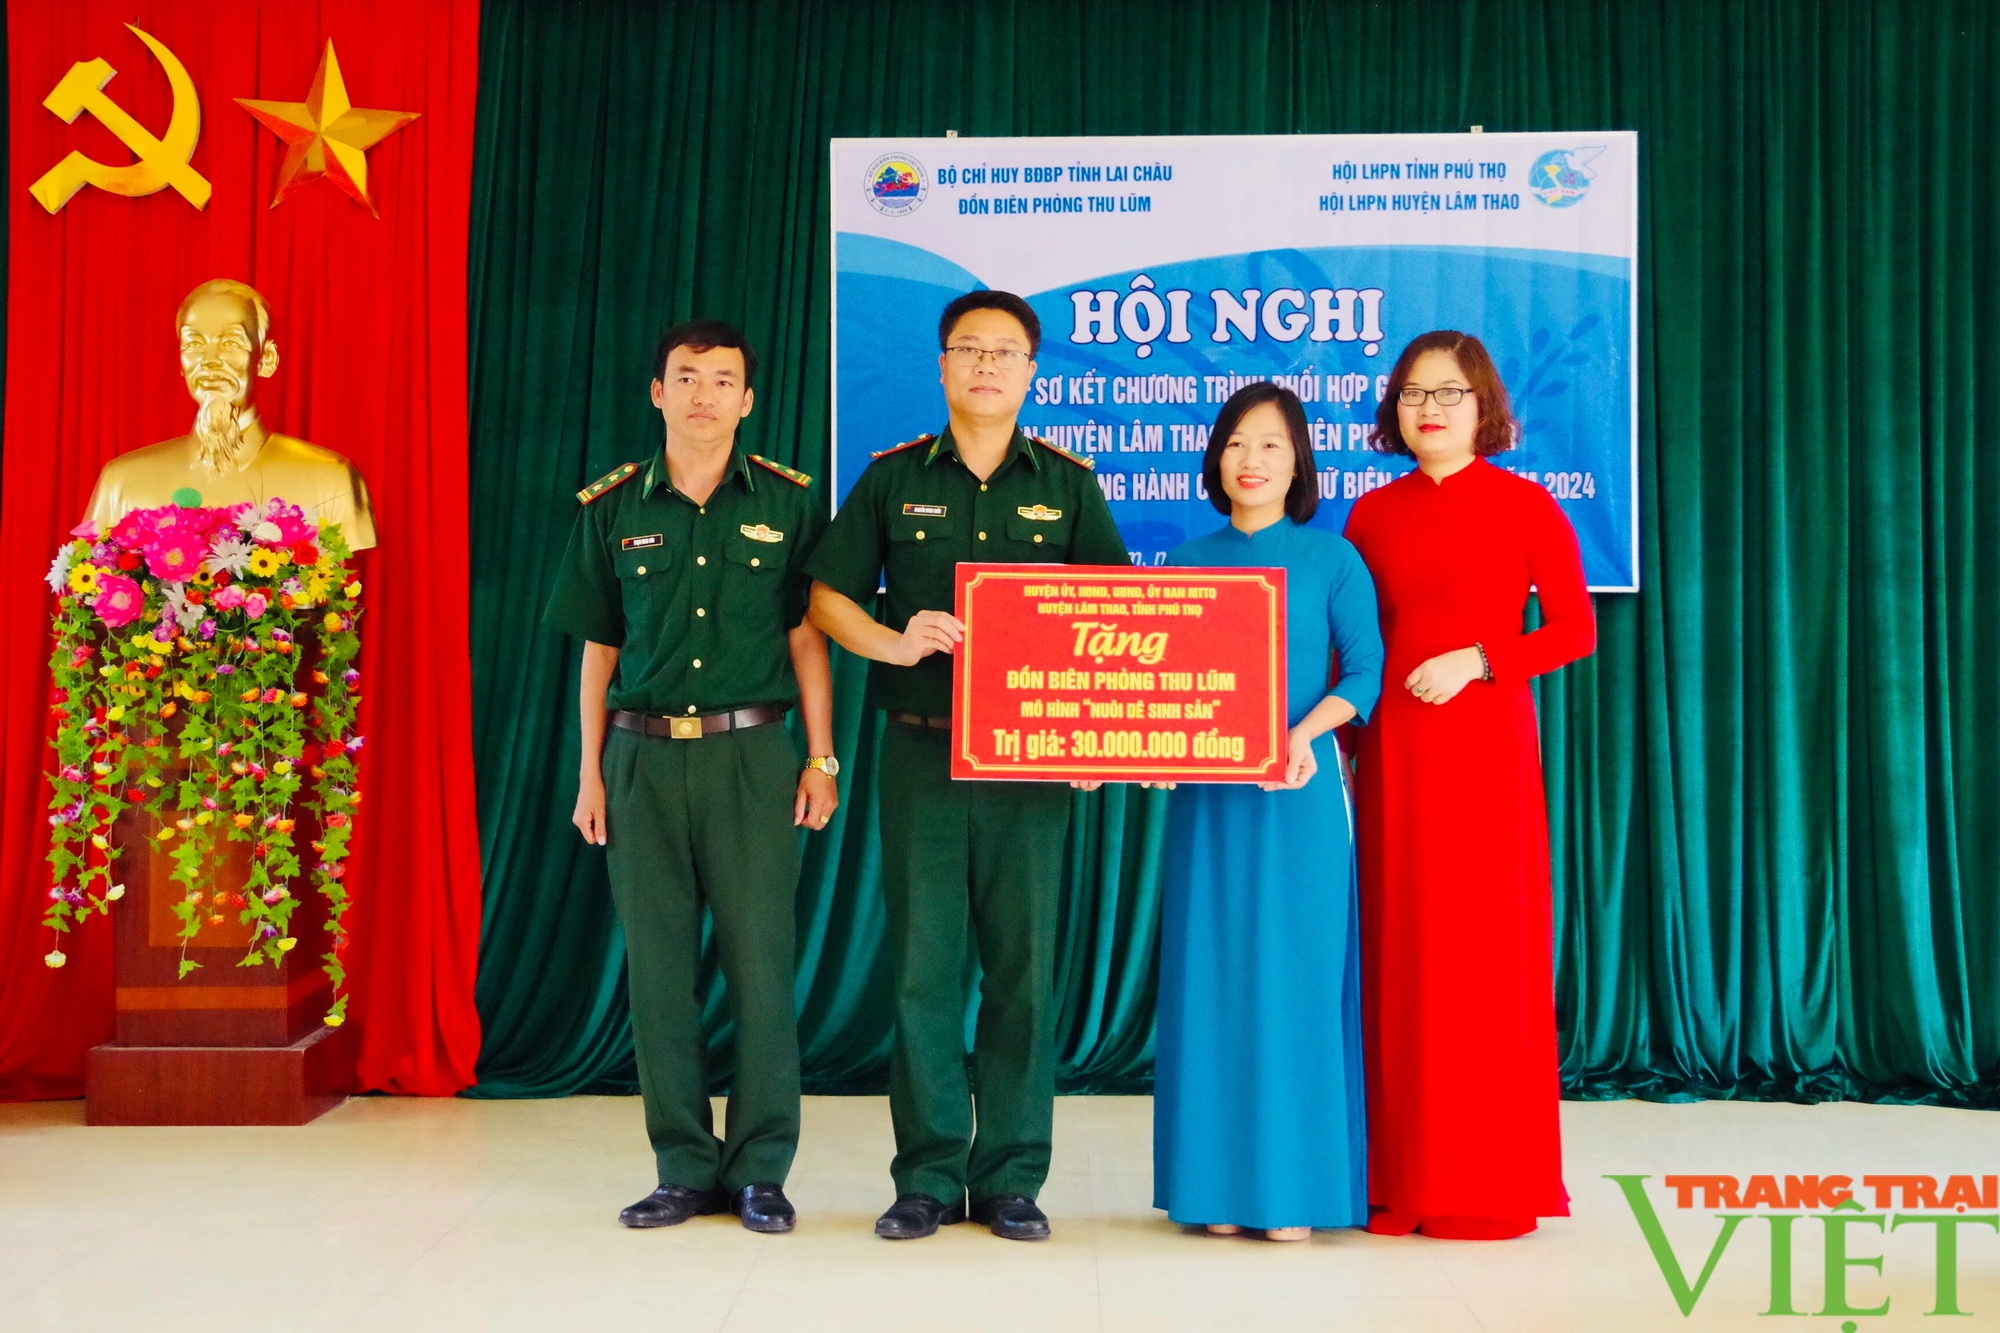 Lai Châu: Sơ kết chương trình phối hợp giữa Đồn Biên phòng Thu Lũm và Hội LHPN huyện Lâm Thao, Phú Thọ- Ảnh 12.